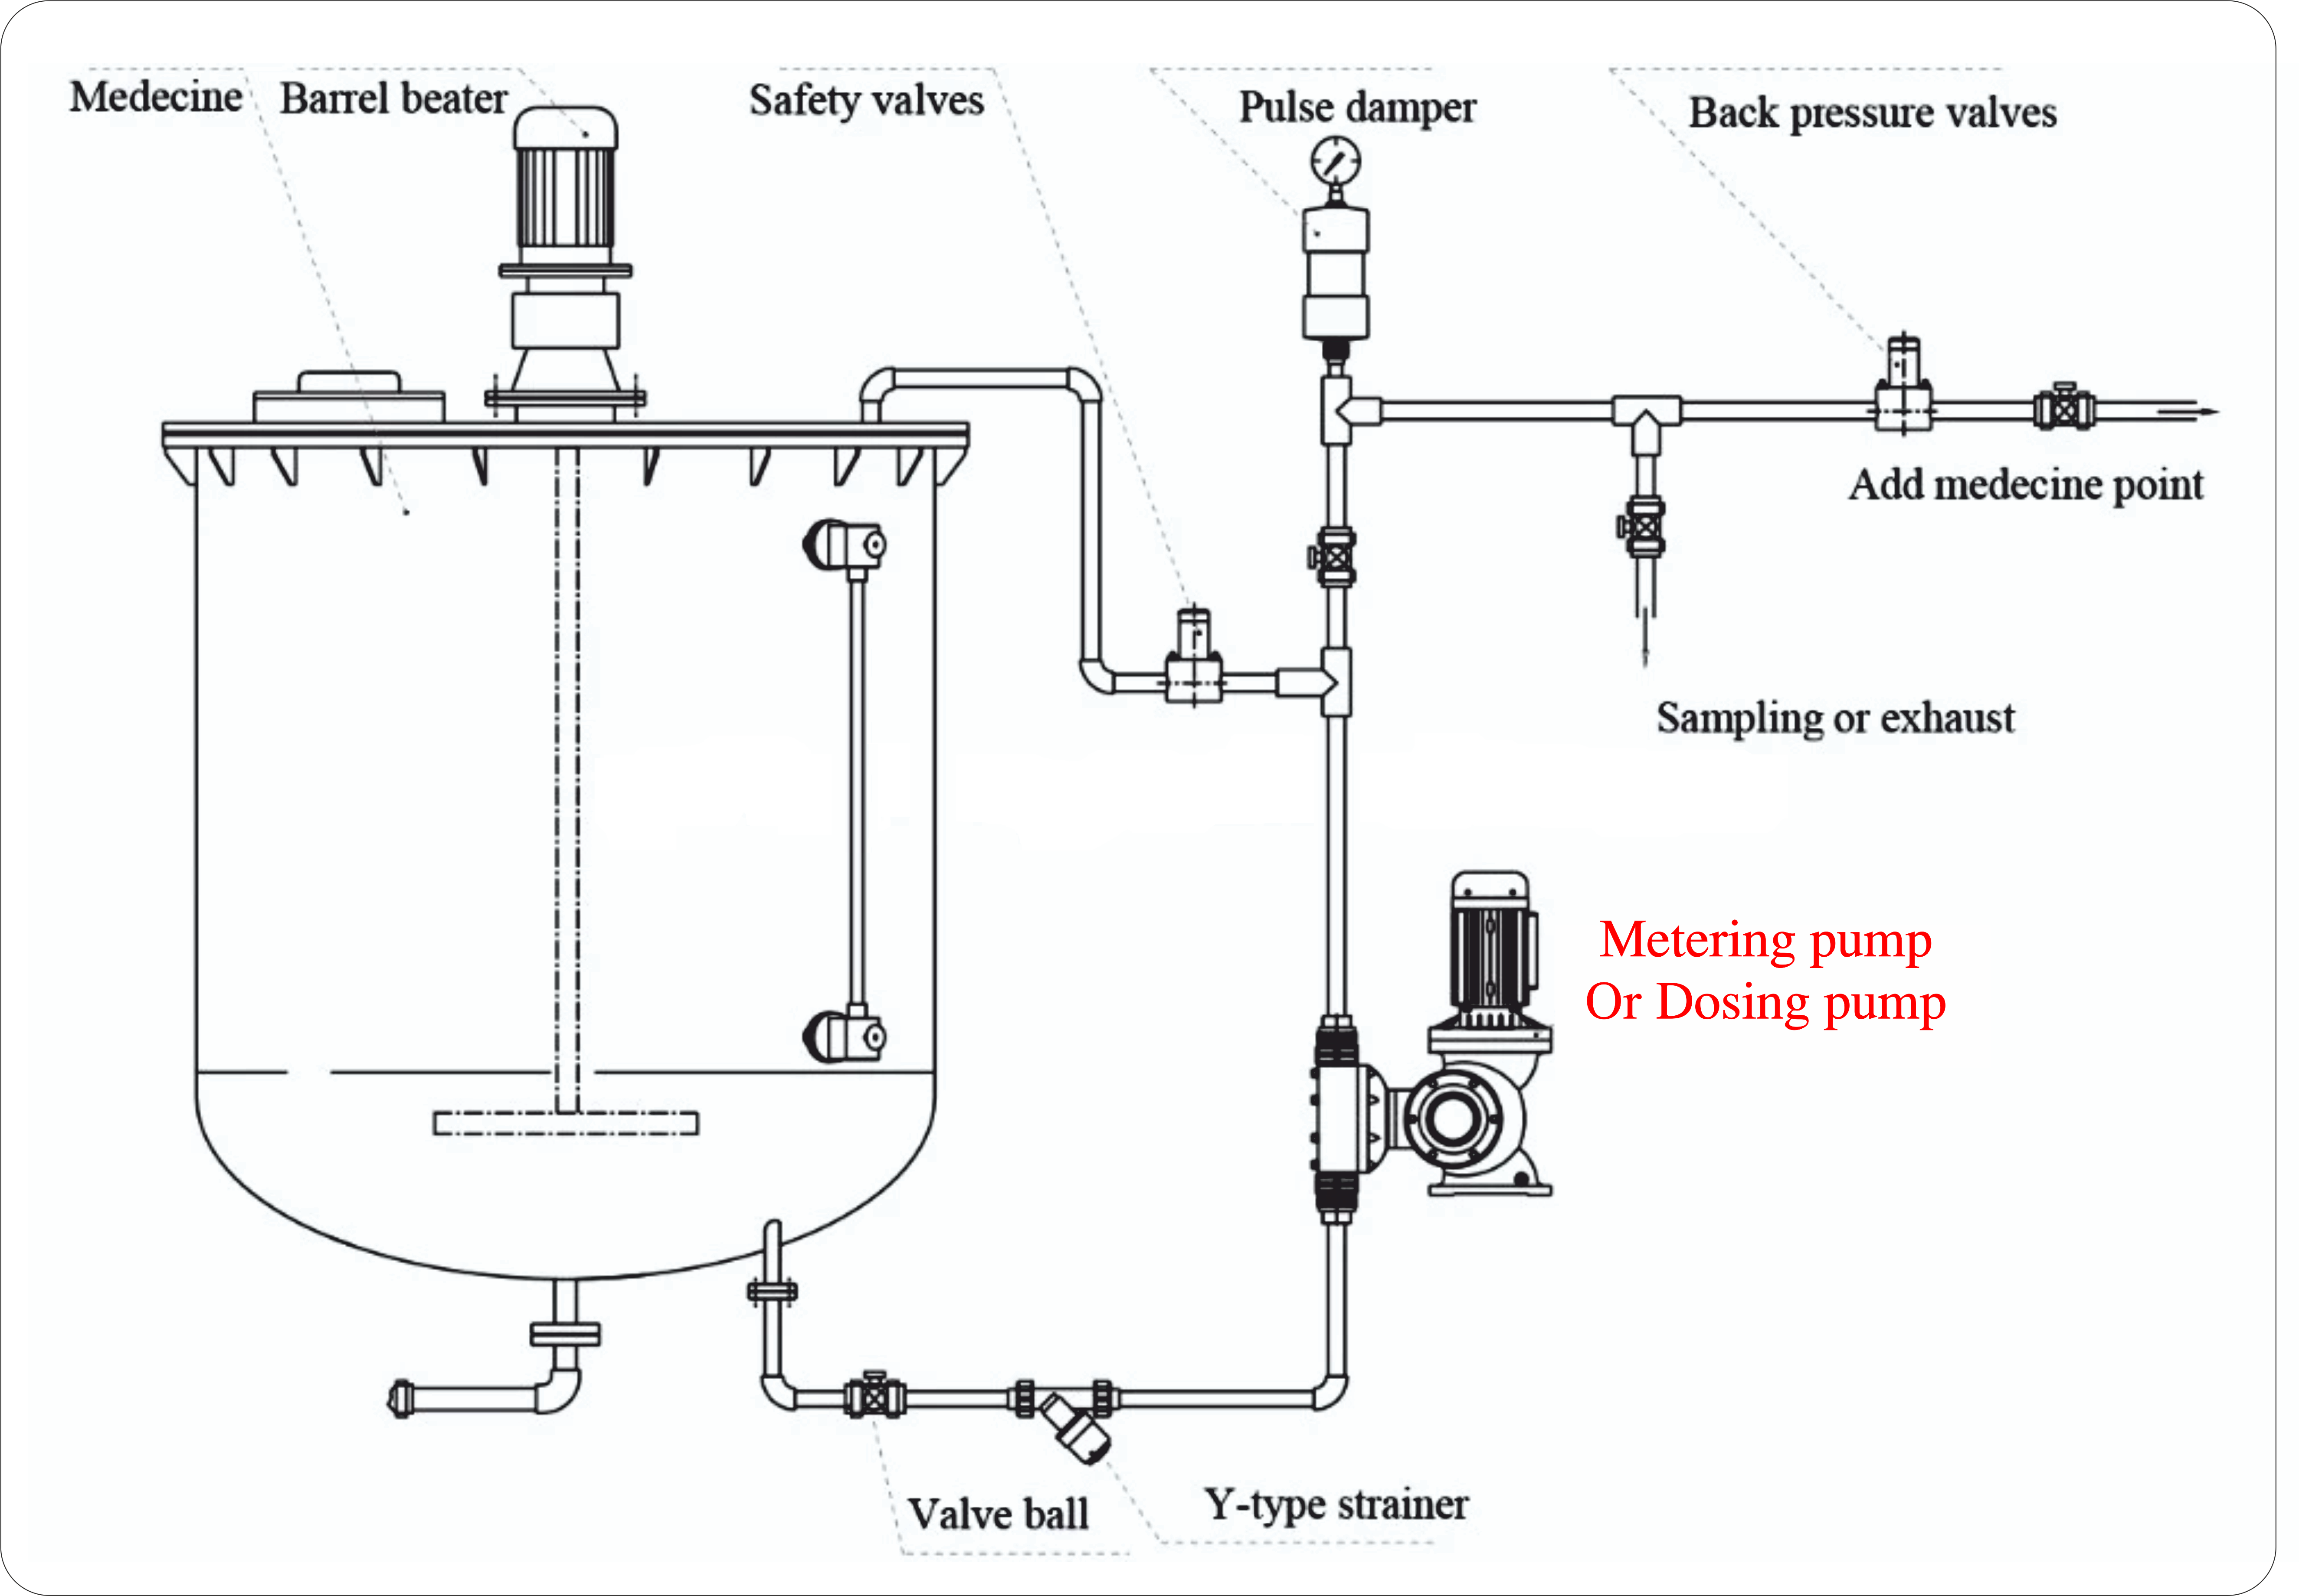 Dosing pump Or Metering pump